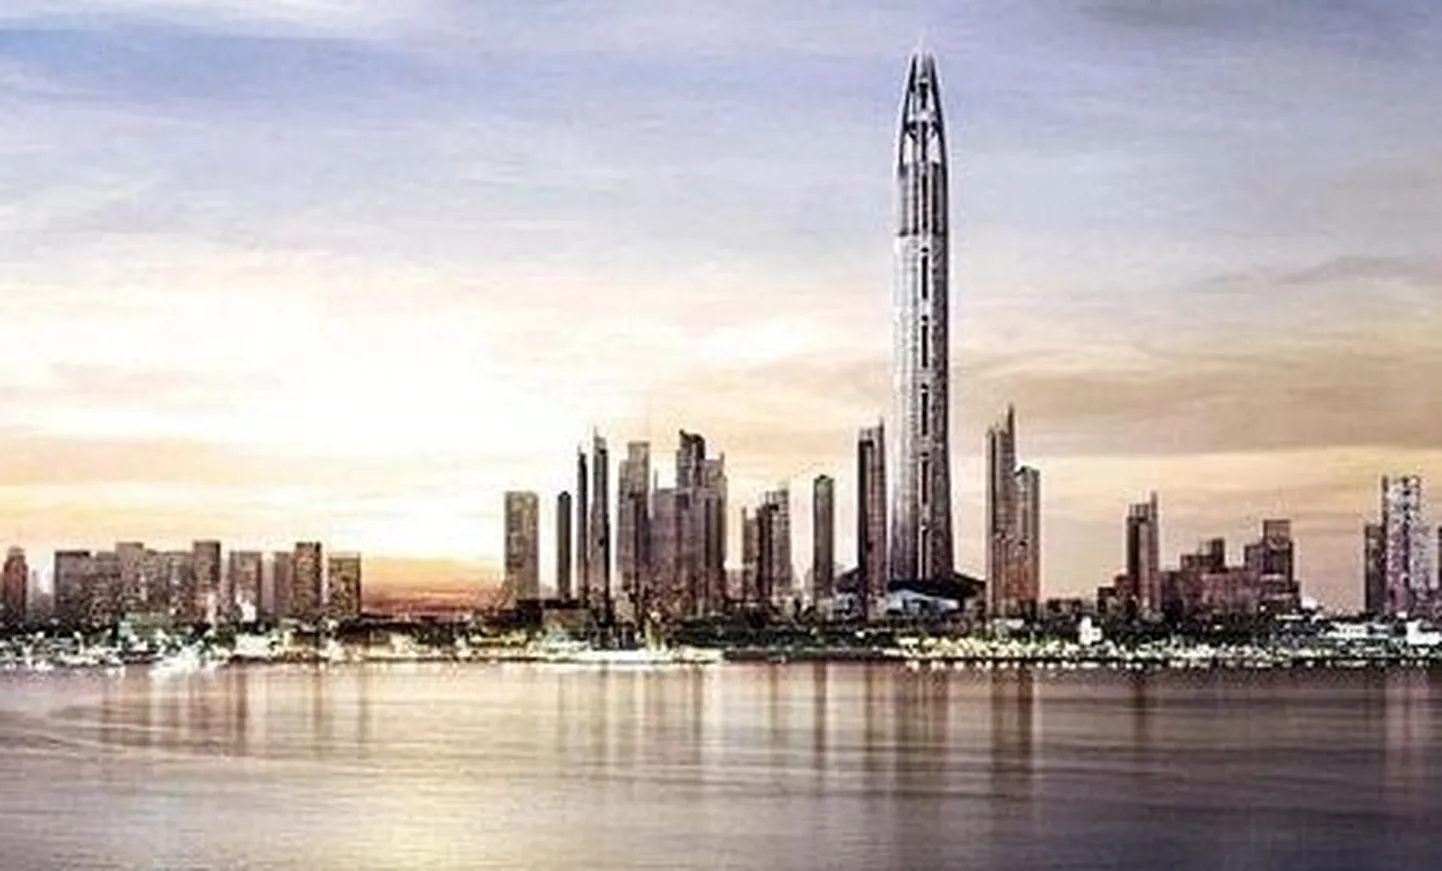 Kunstniku joonis Dubaisse rajatavast üle kilomeetri kõrgusest tornist, sadamast ja uuslinnast